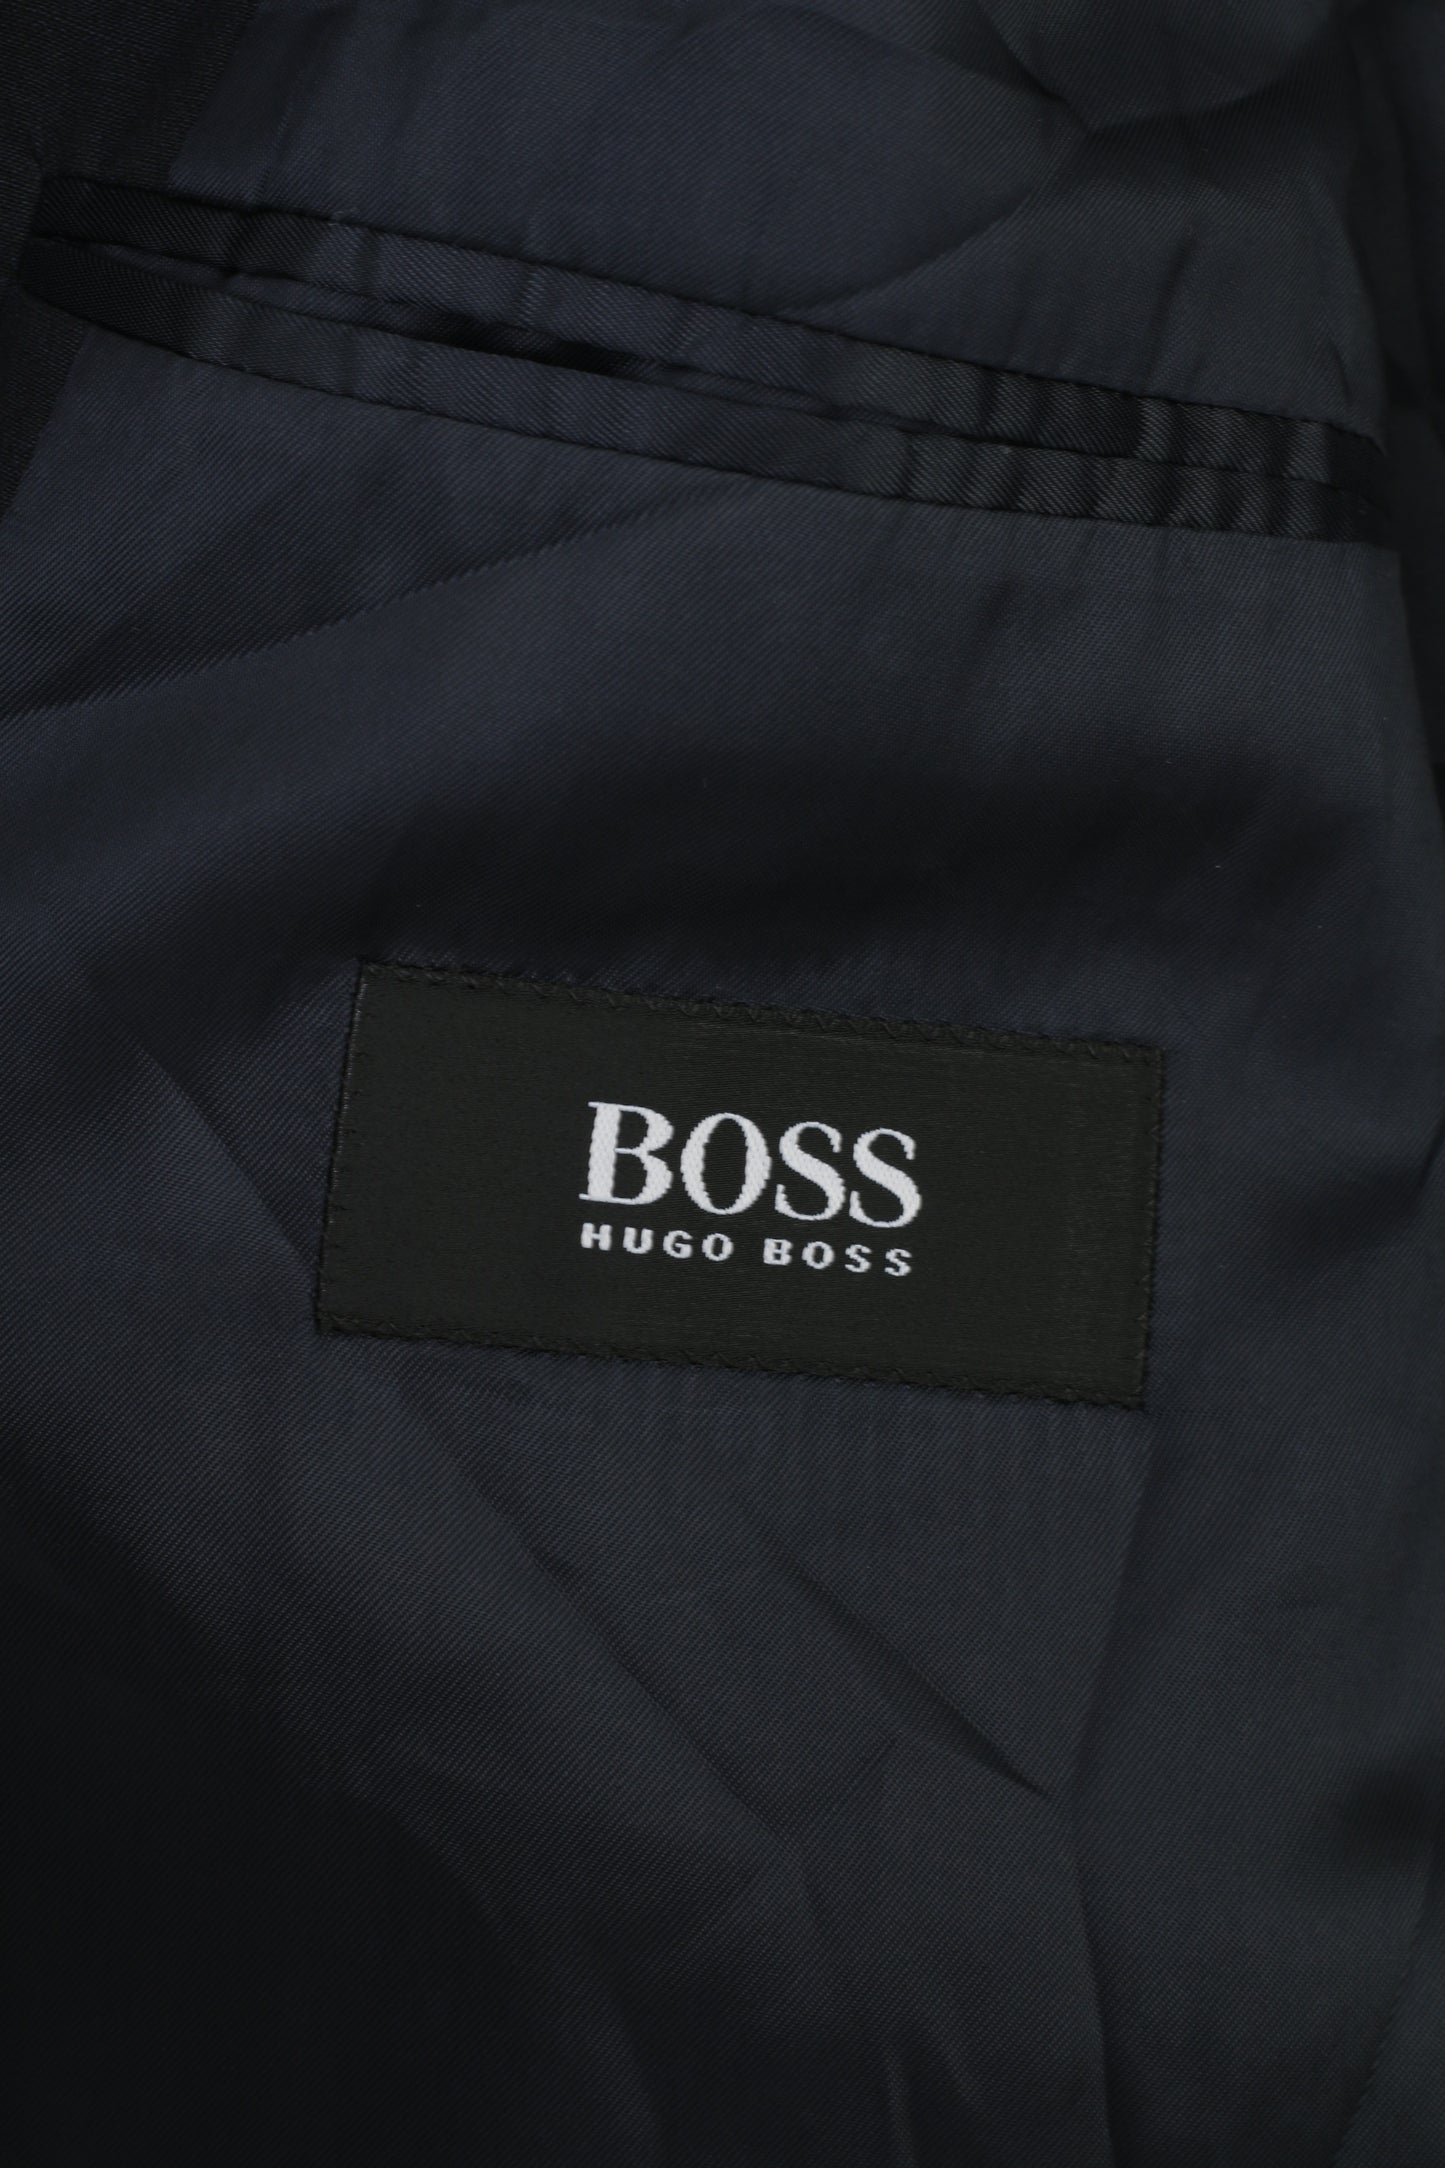 Hugo Boss Men 102 40 Blazer Navy Breasted Collar Bottoms Wool Jacket